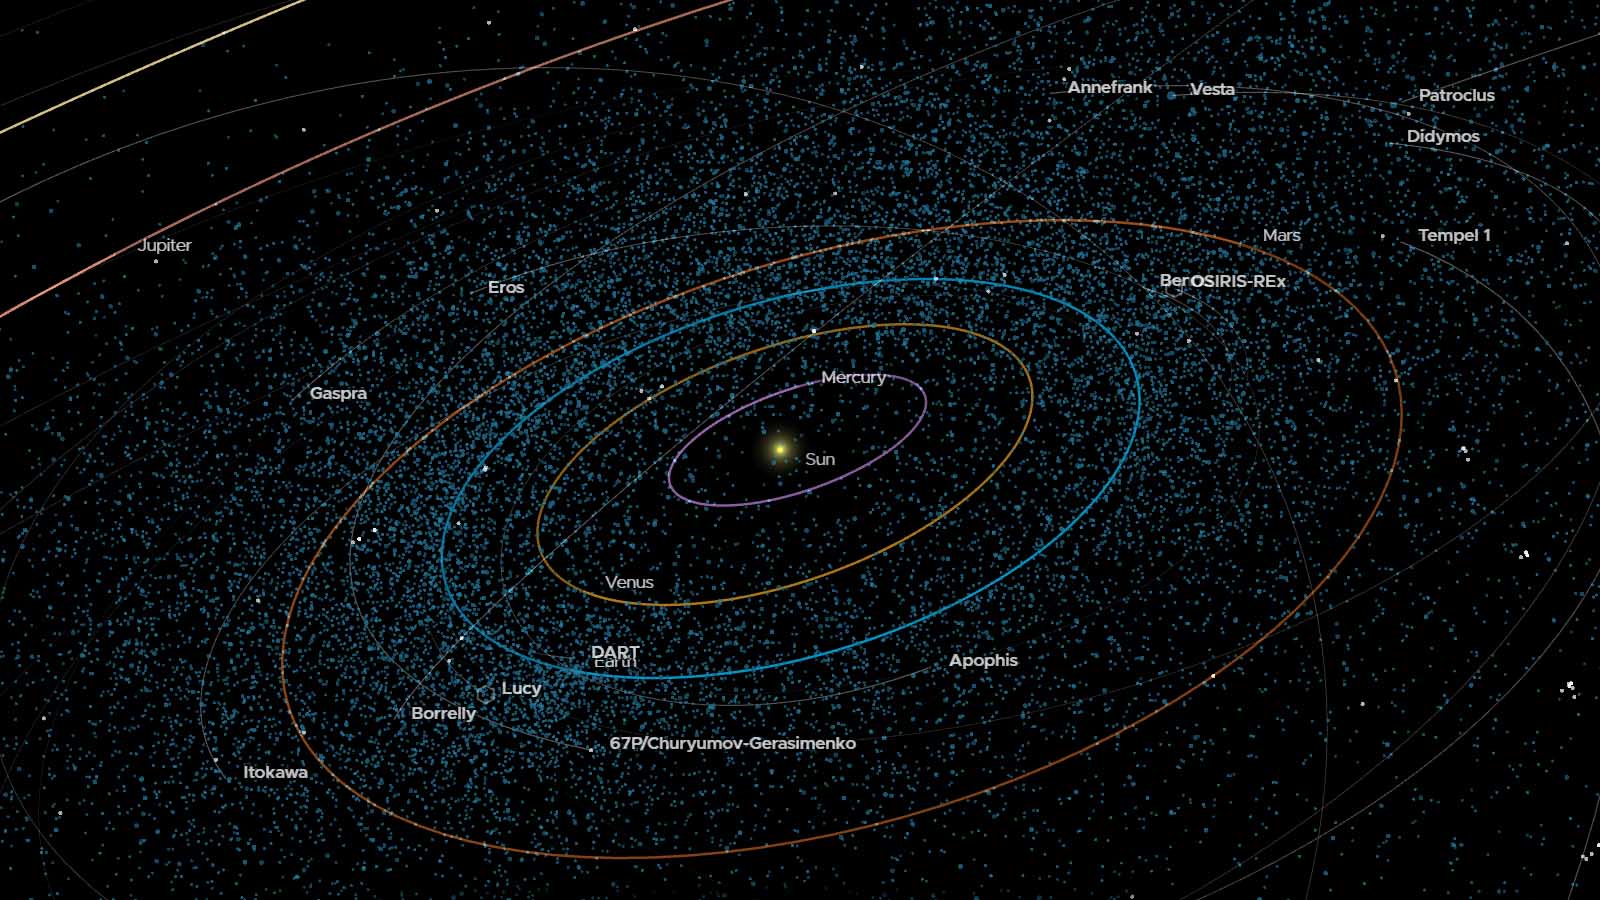 Koľko asteroidov sa nachádza v našej blízkosti?